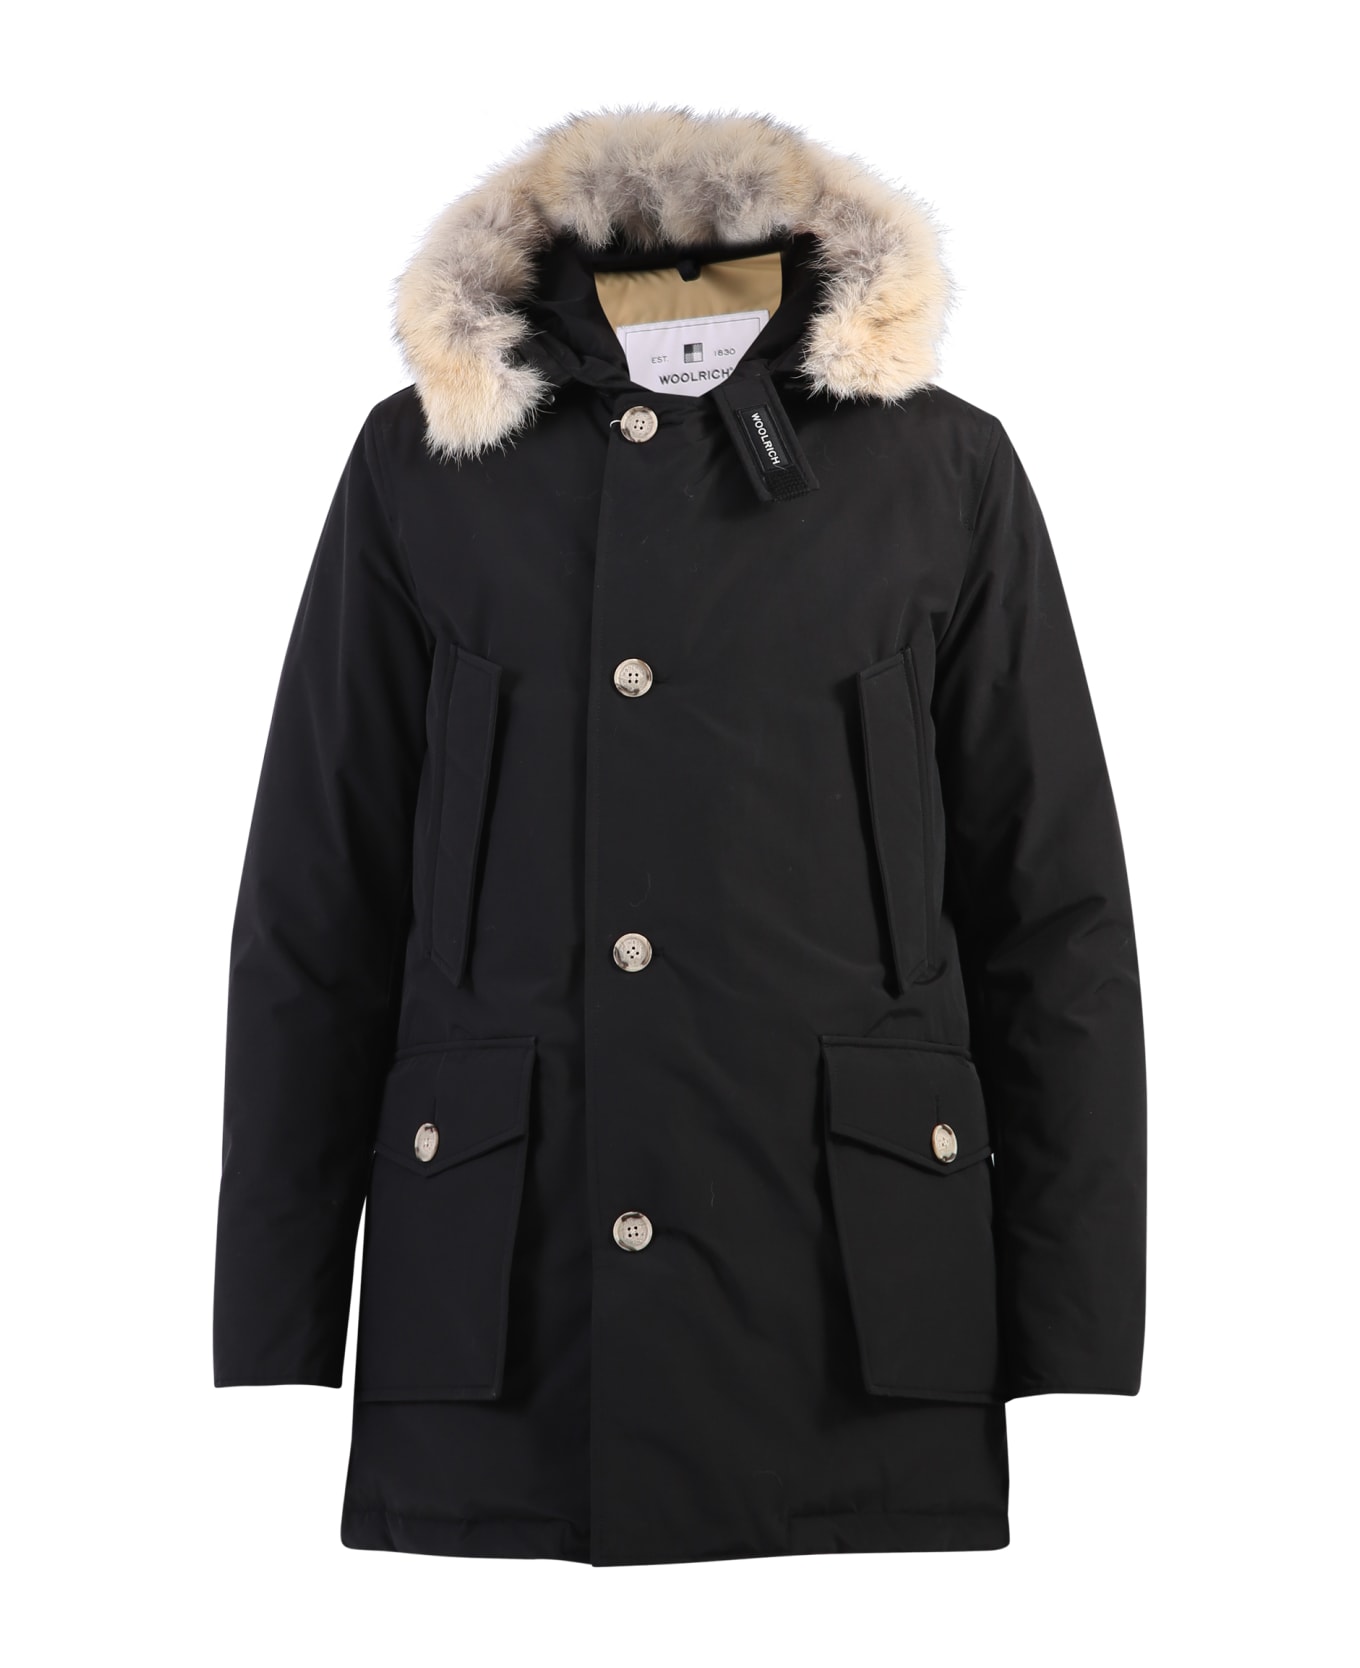 Woolrich Artic Parka Coat - Black